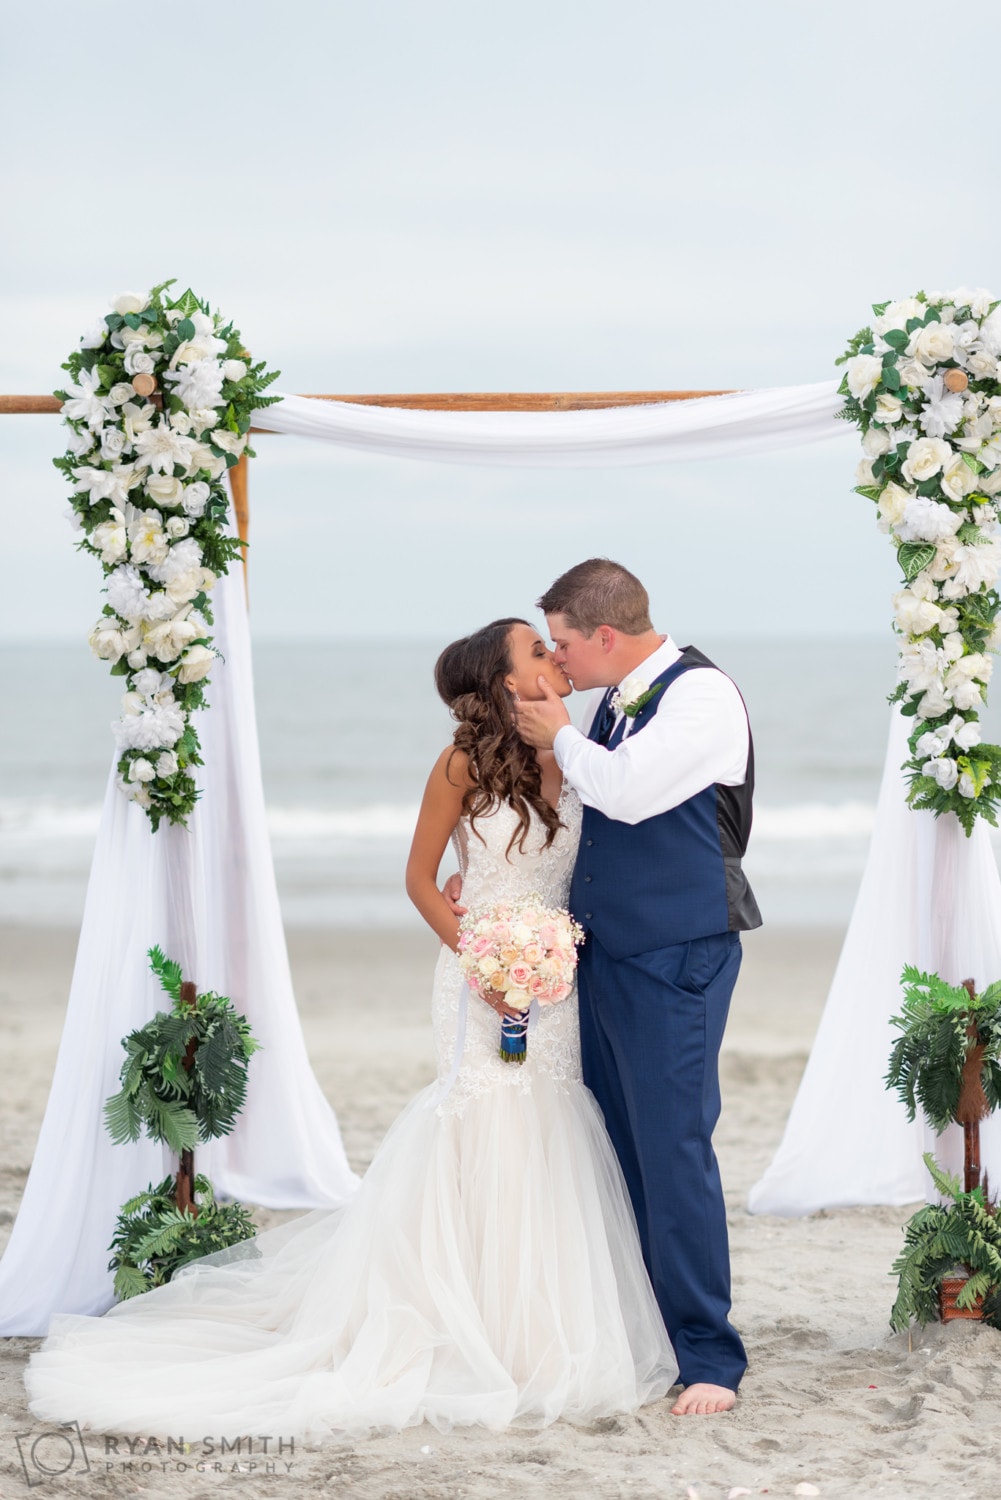 Kiss under the wedding arbor  - Avista Resort - North Myrtle Beach